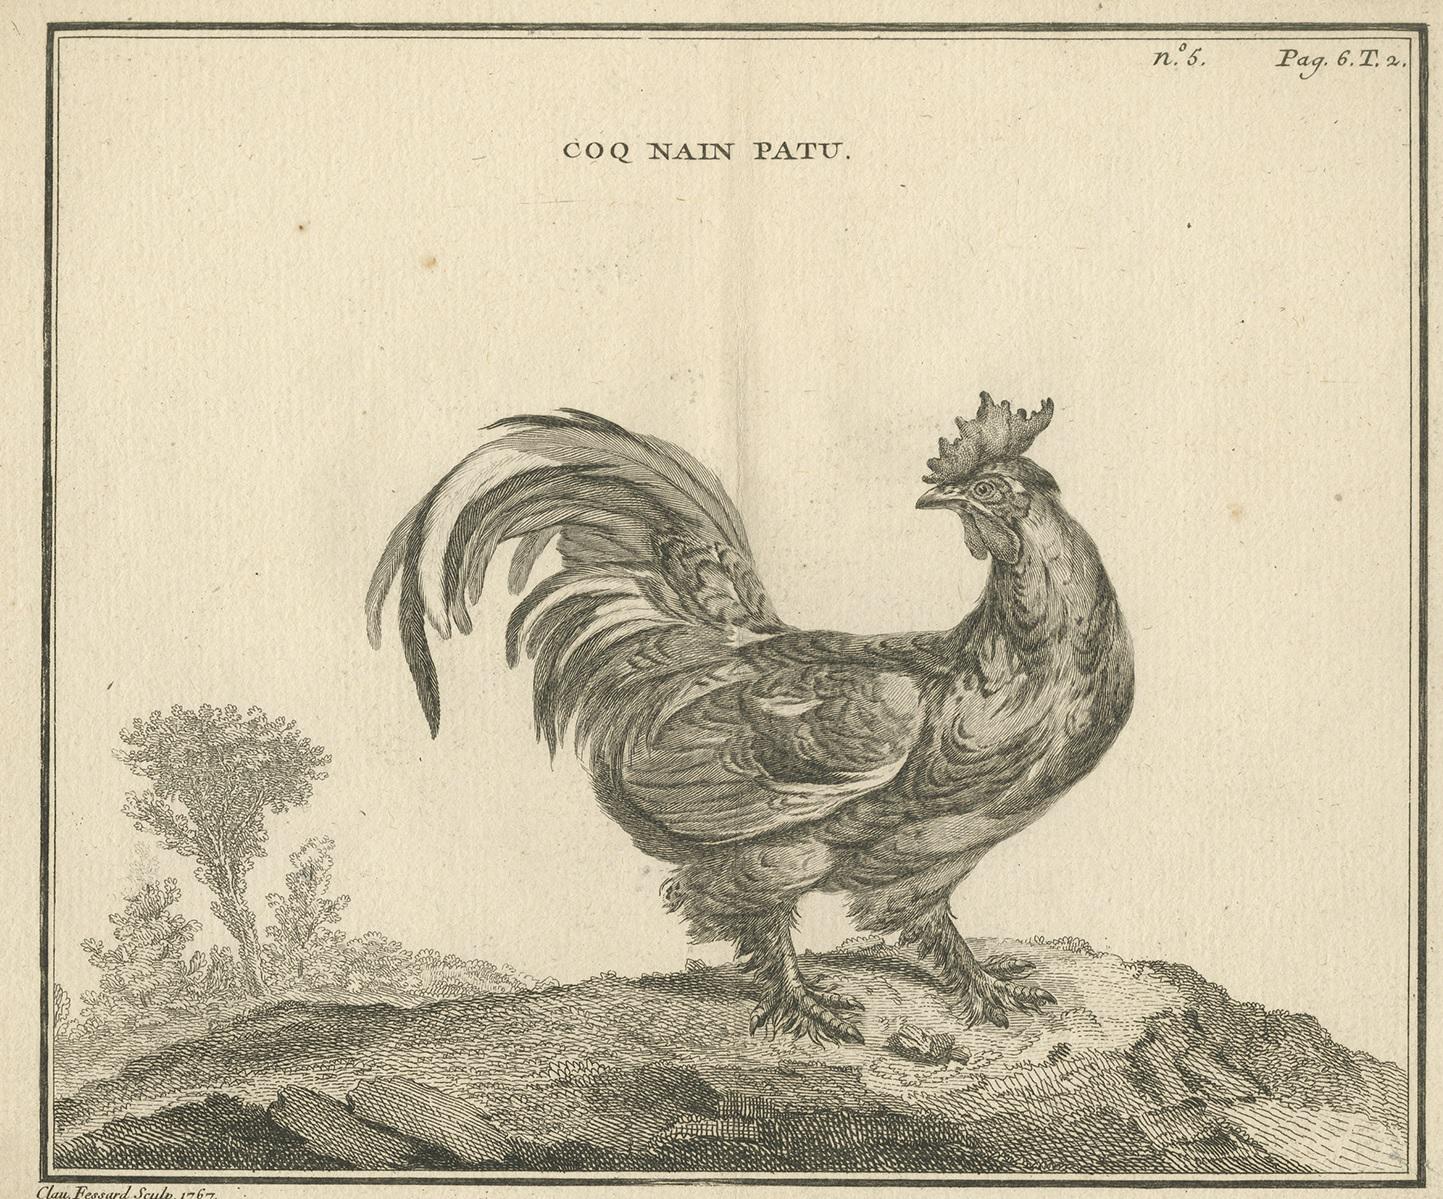 Antique print titled 'Coq nain Patu'. Copper engraving of a rooster. This print originates from 'Handboek der genees- en verloskunde van het vee (..)' by A. Numan. Published by R.J. Schierbeek, 1819. Engraved by C. Fessard.